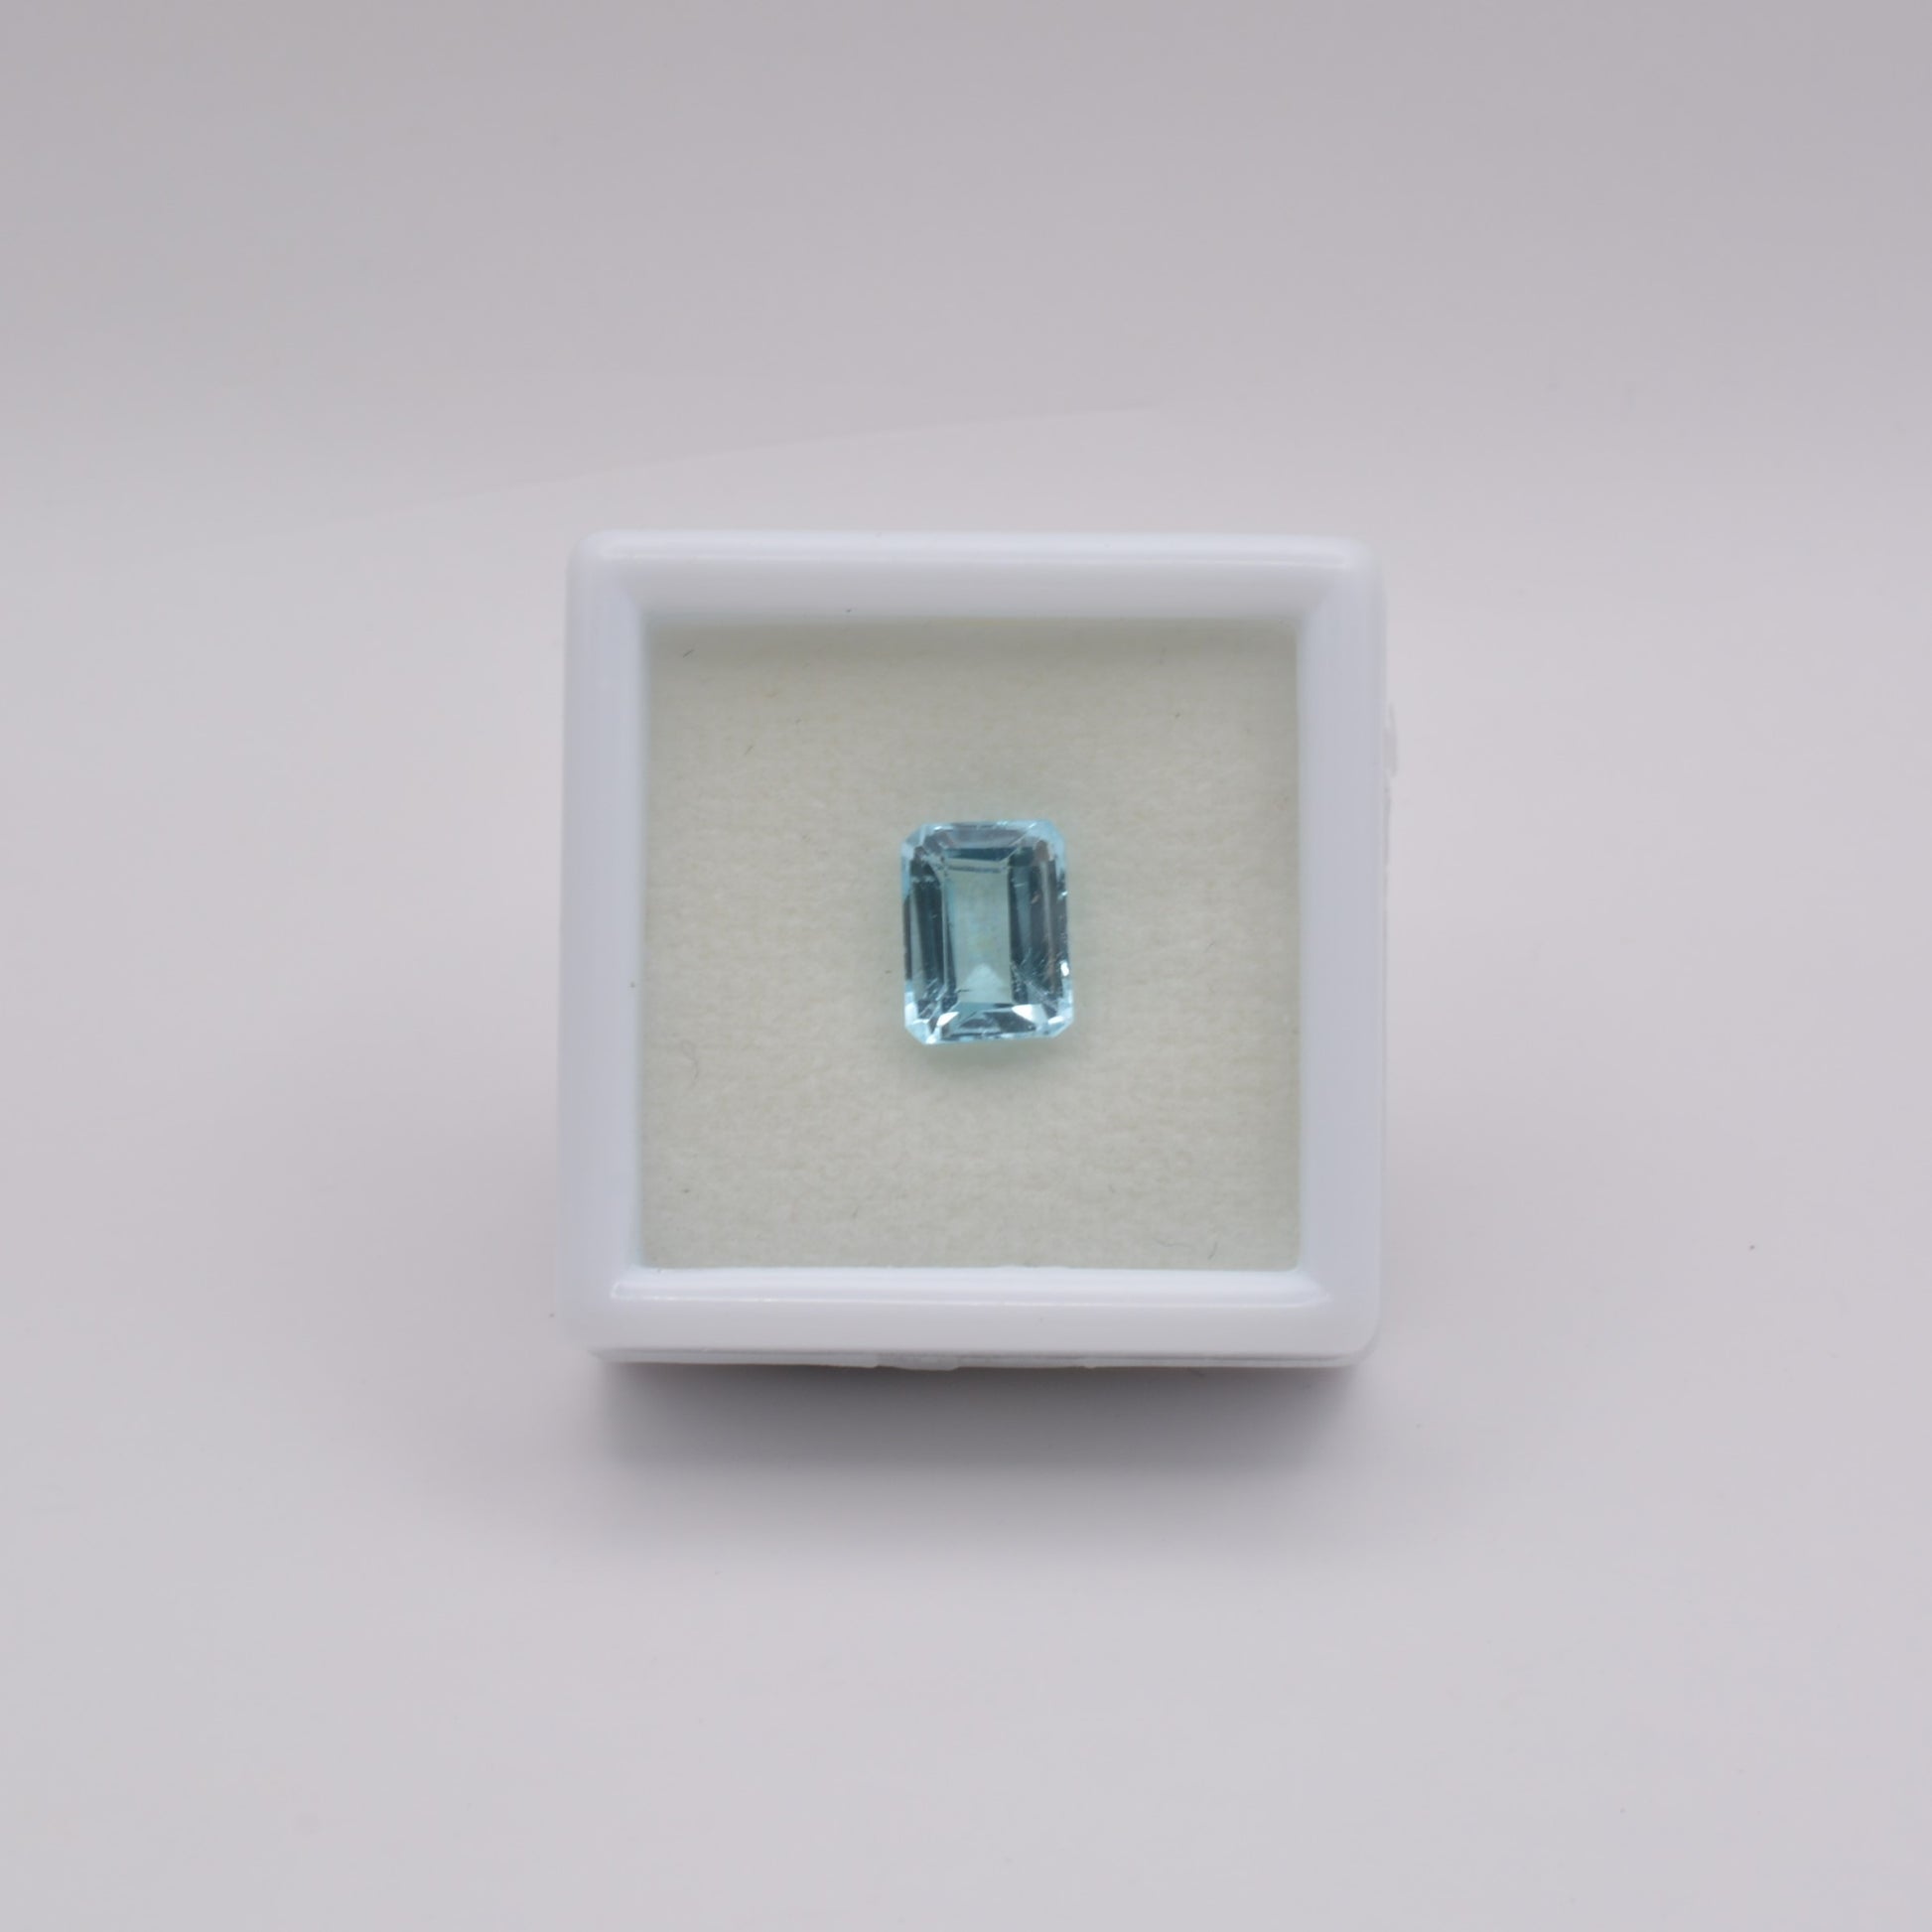 Topaze Rectangle 2,18ct - pierre précieuse - gemme